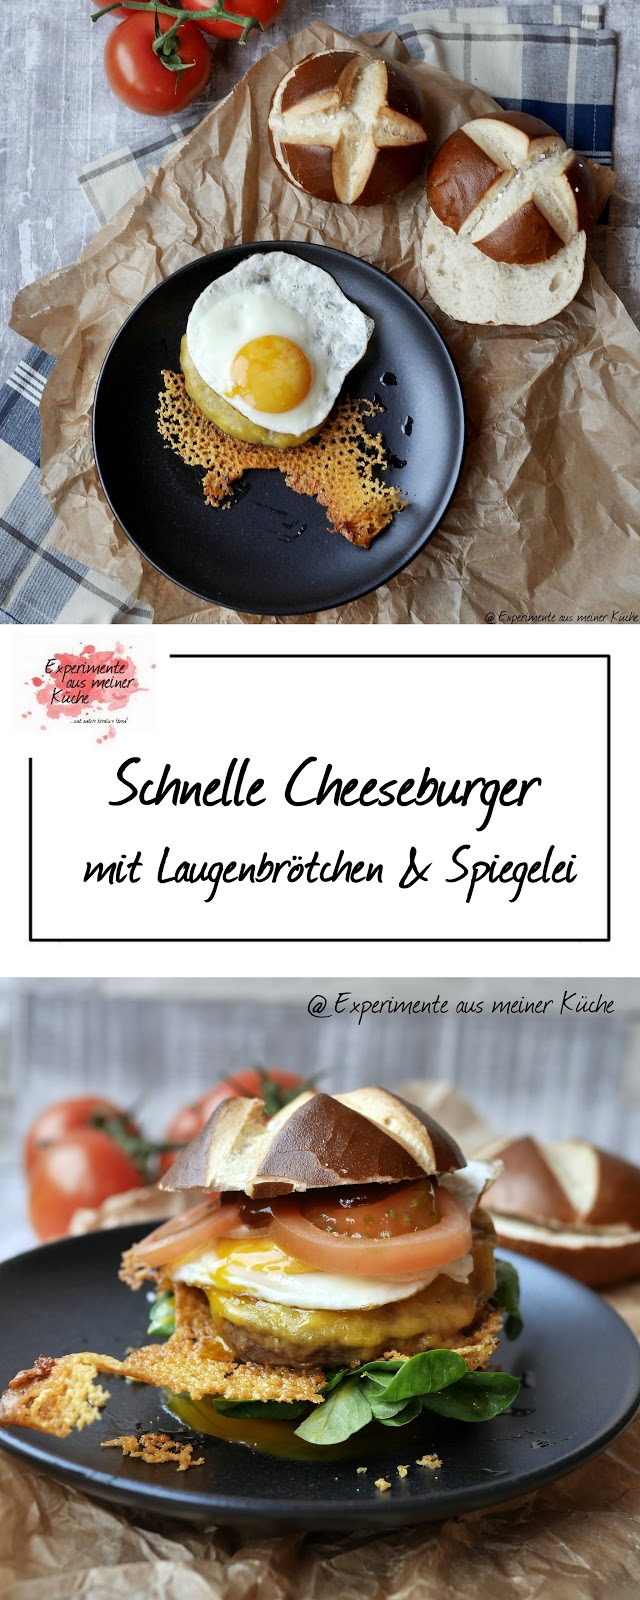 Experimente aus meiner Küche: Schnelle Cheeseburger